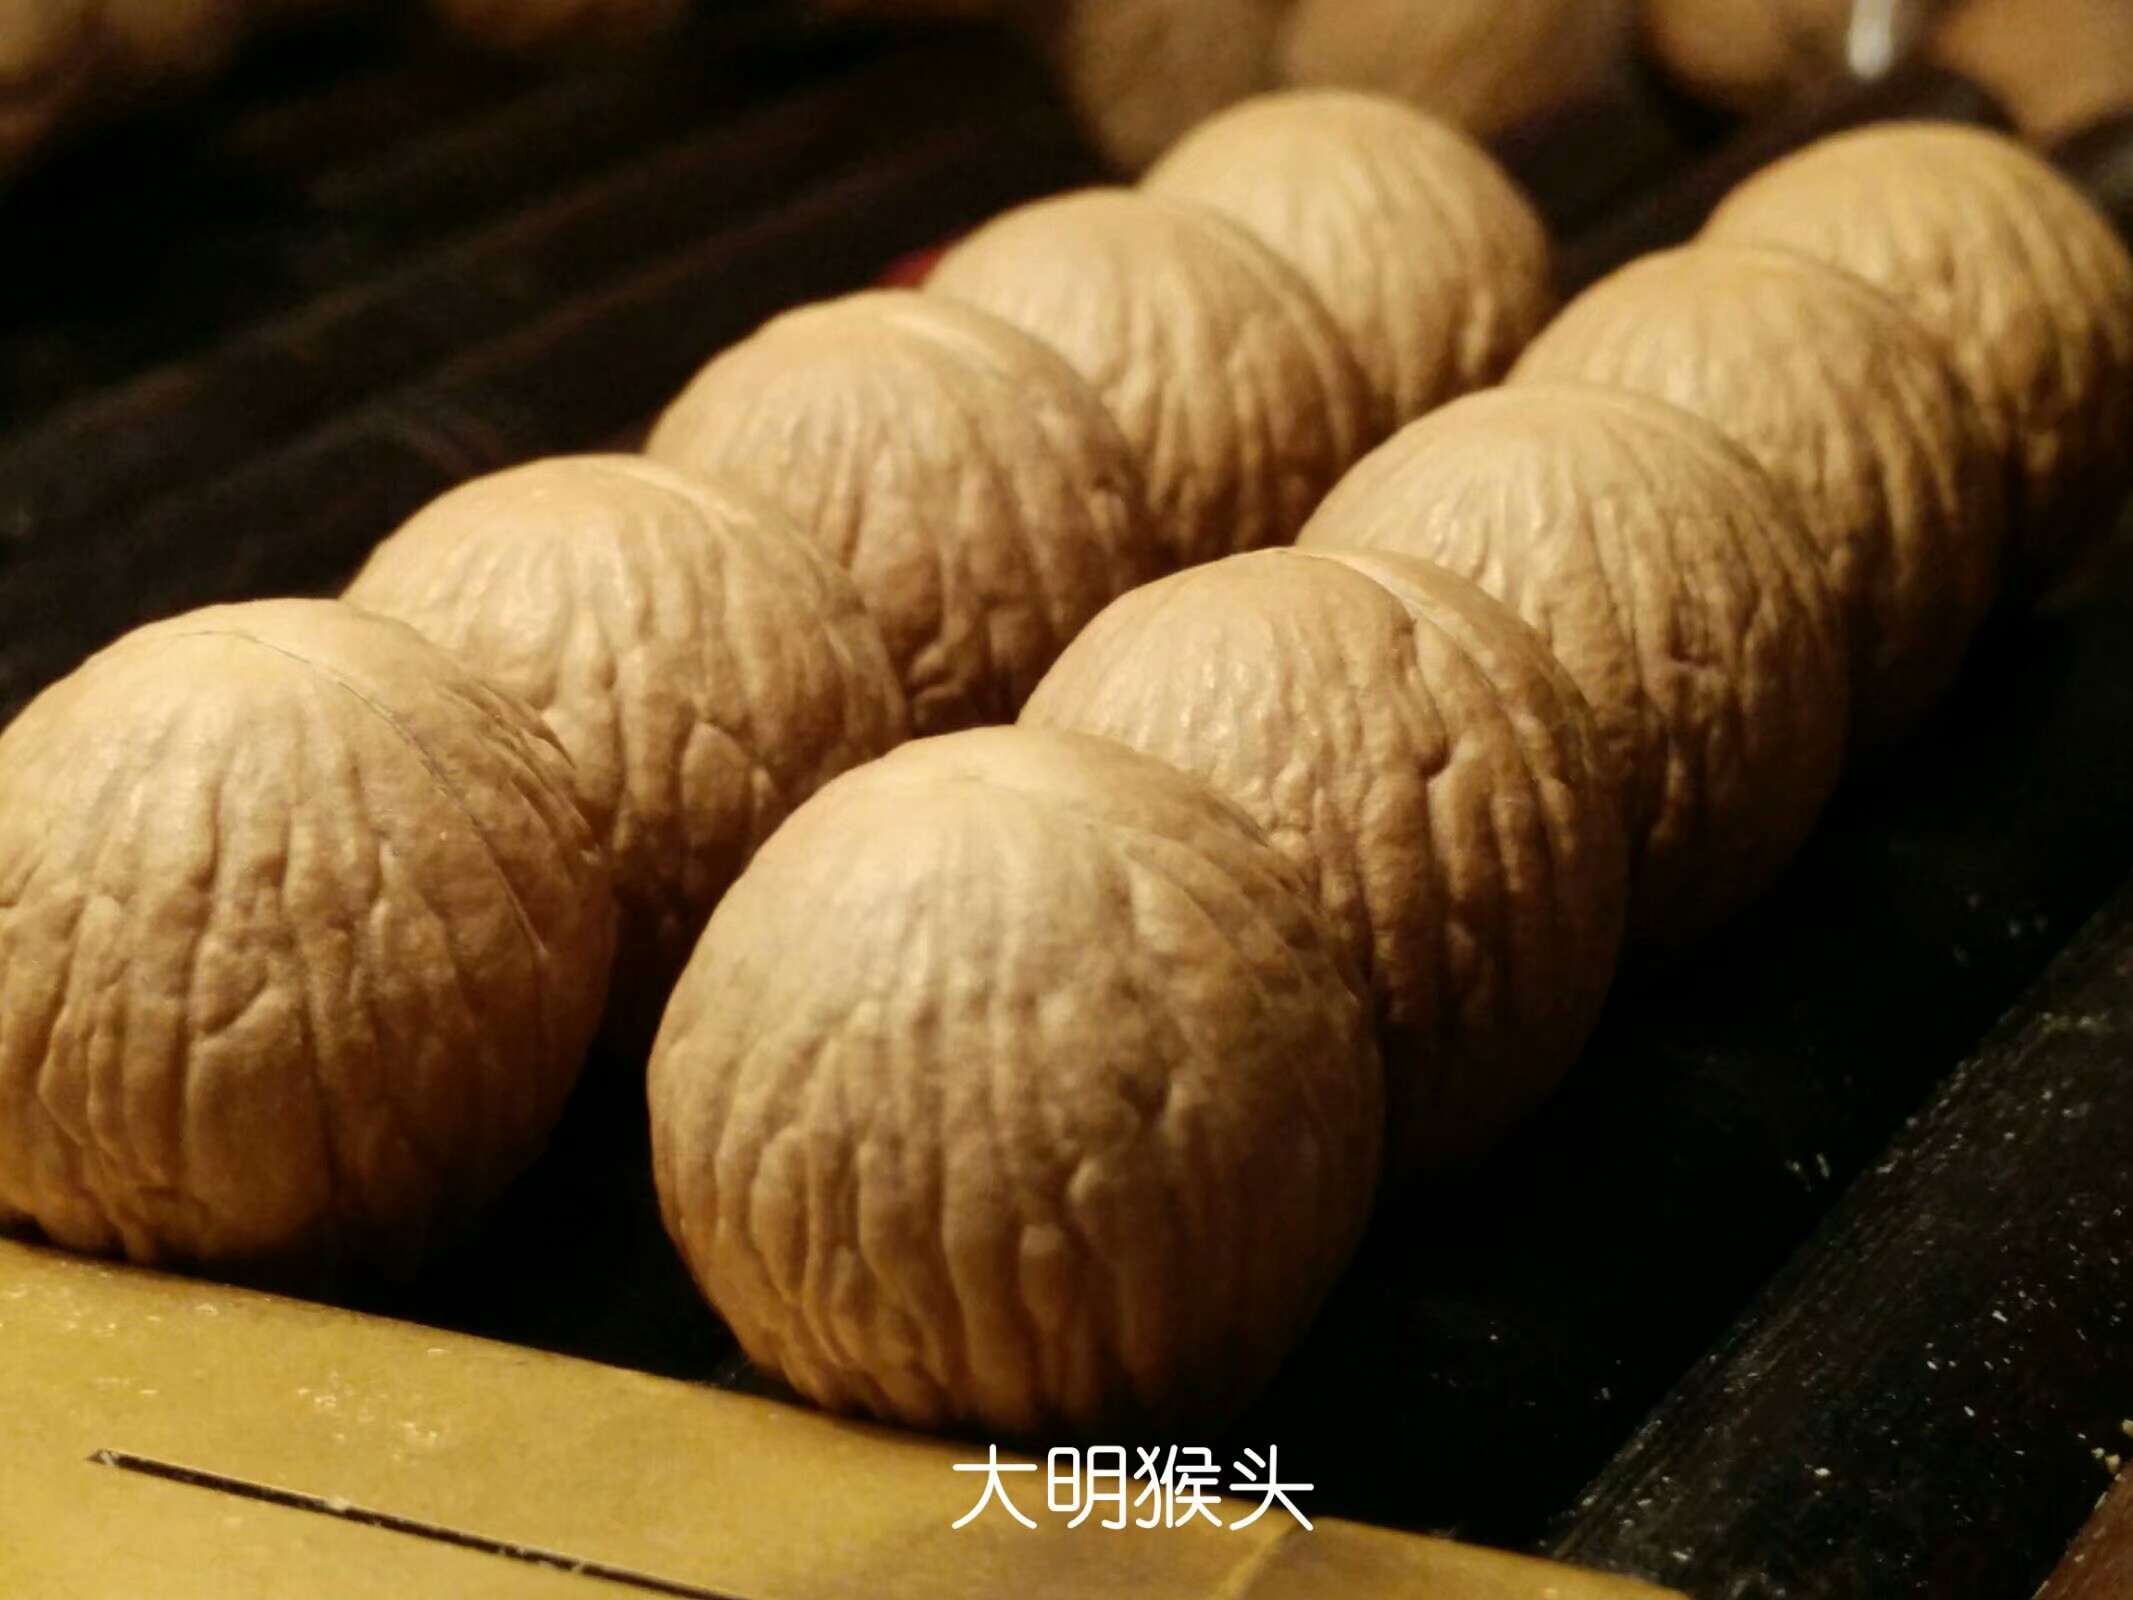 江中猴姑江中食疗饼干猴头菇酥性饼干苏打饼干96g盒装早餐休闲零-阿里巴巴